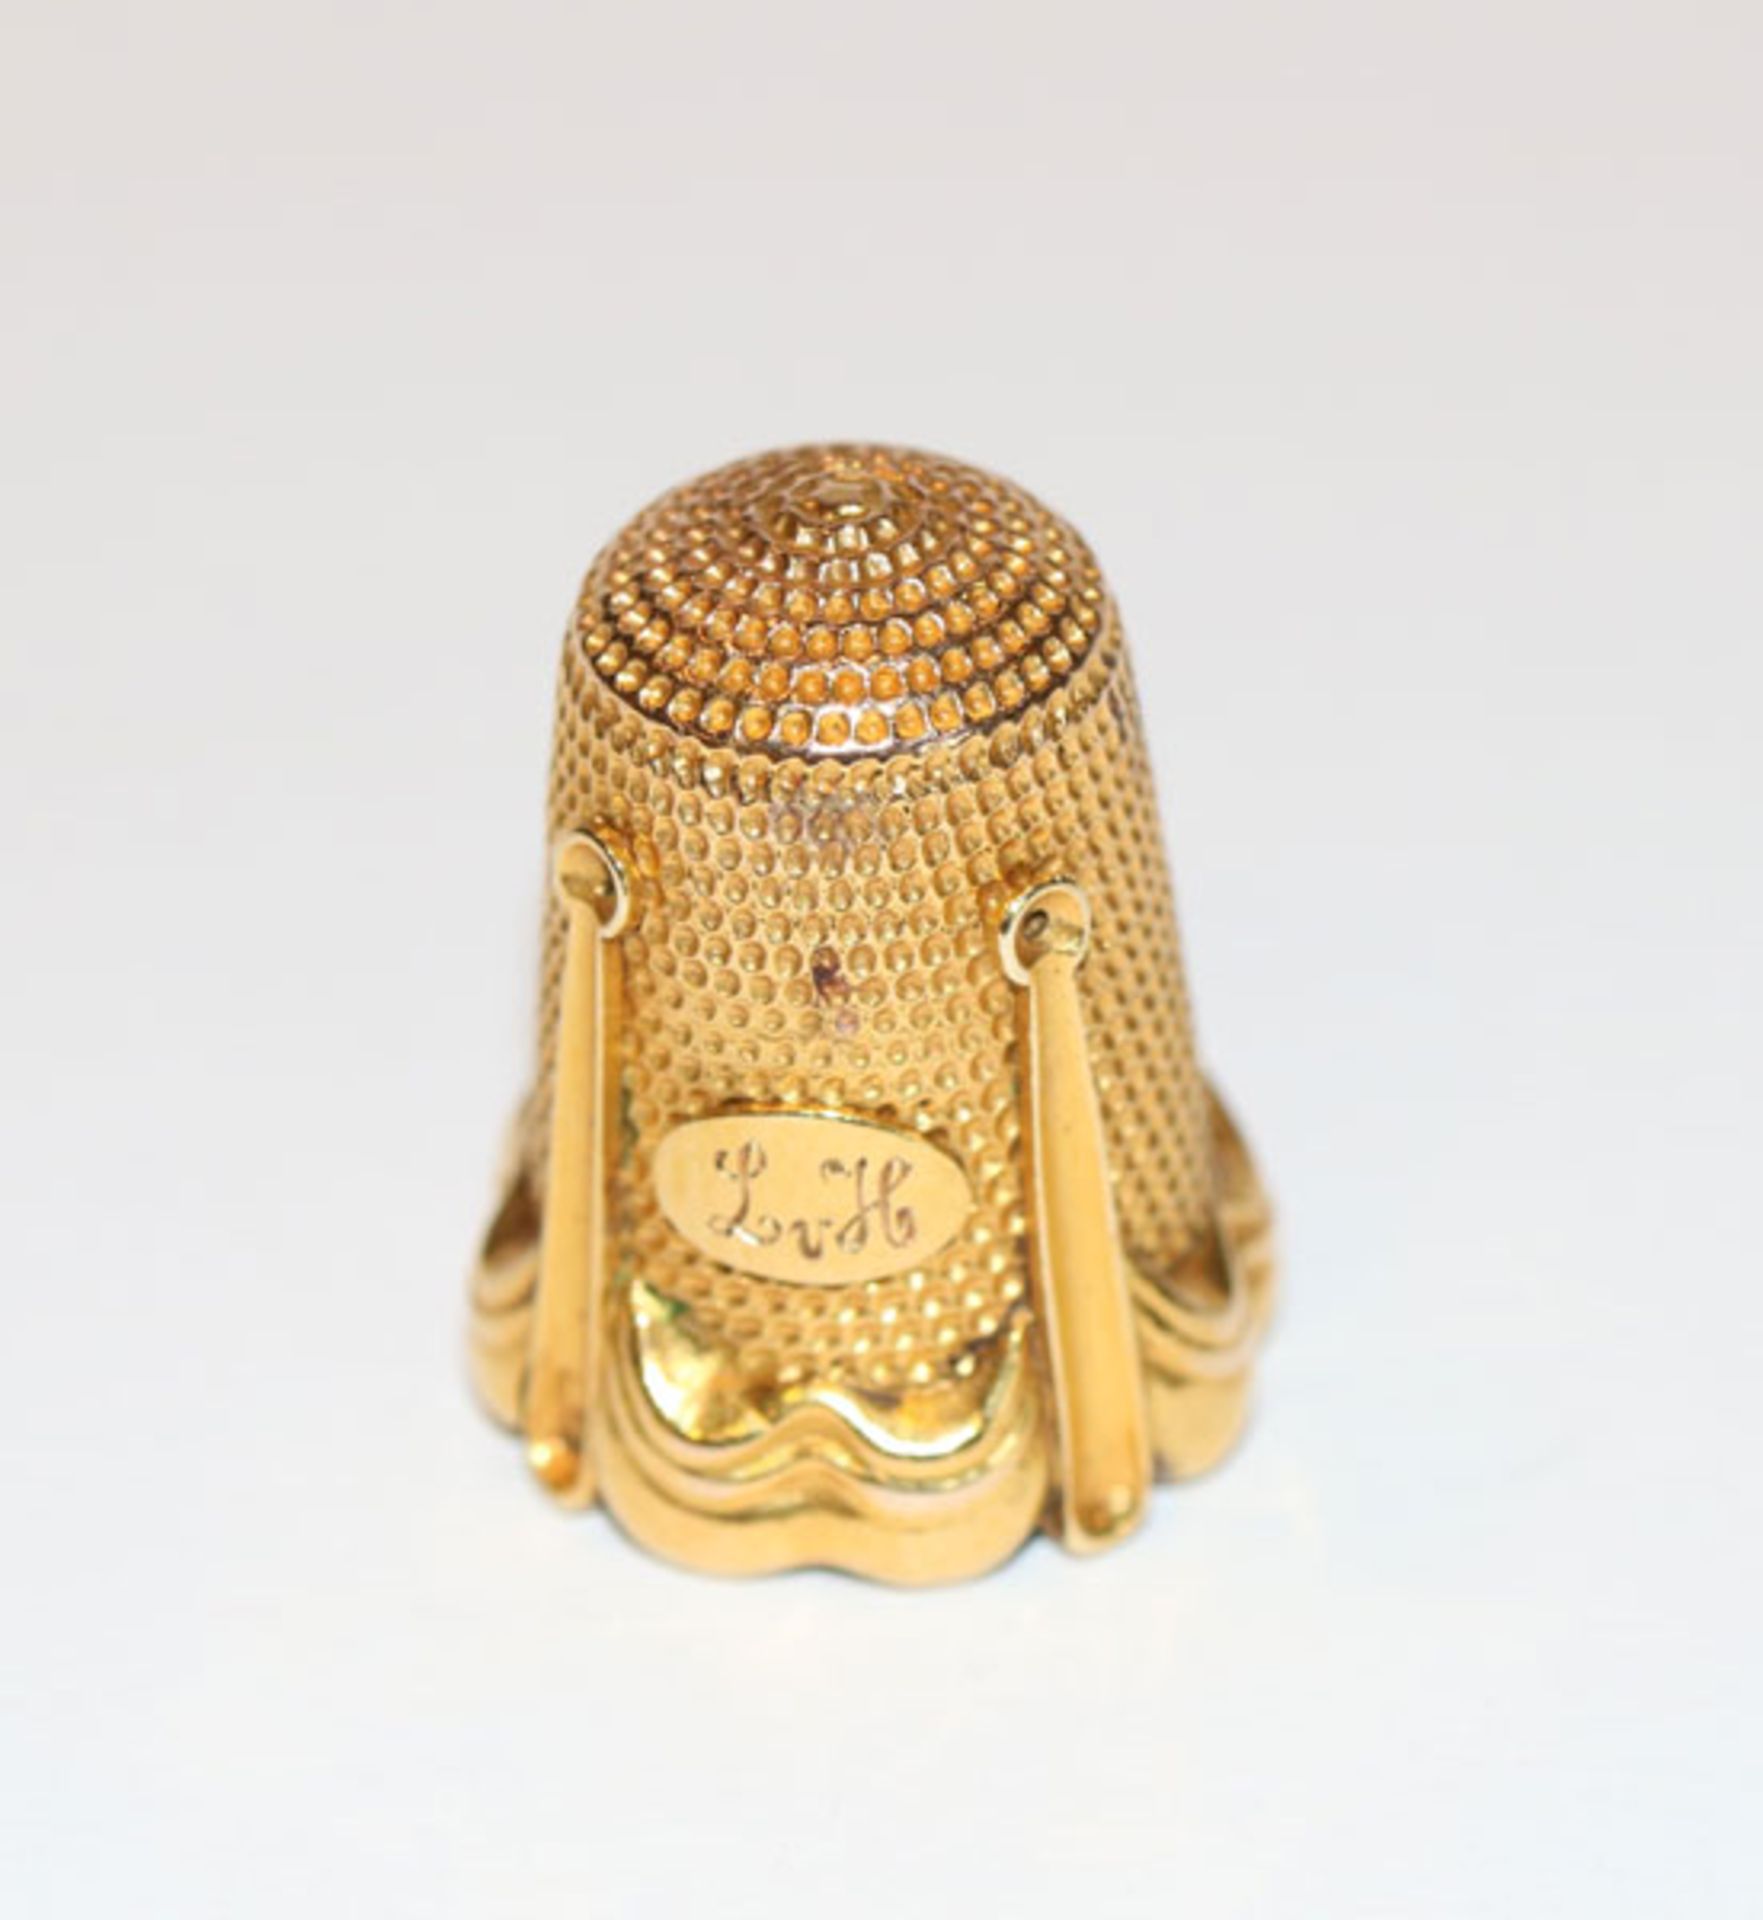 Fingerhut, 560 Gold, Russland ?, um 1900, feine Handarbeit, 4,9 gr.